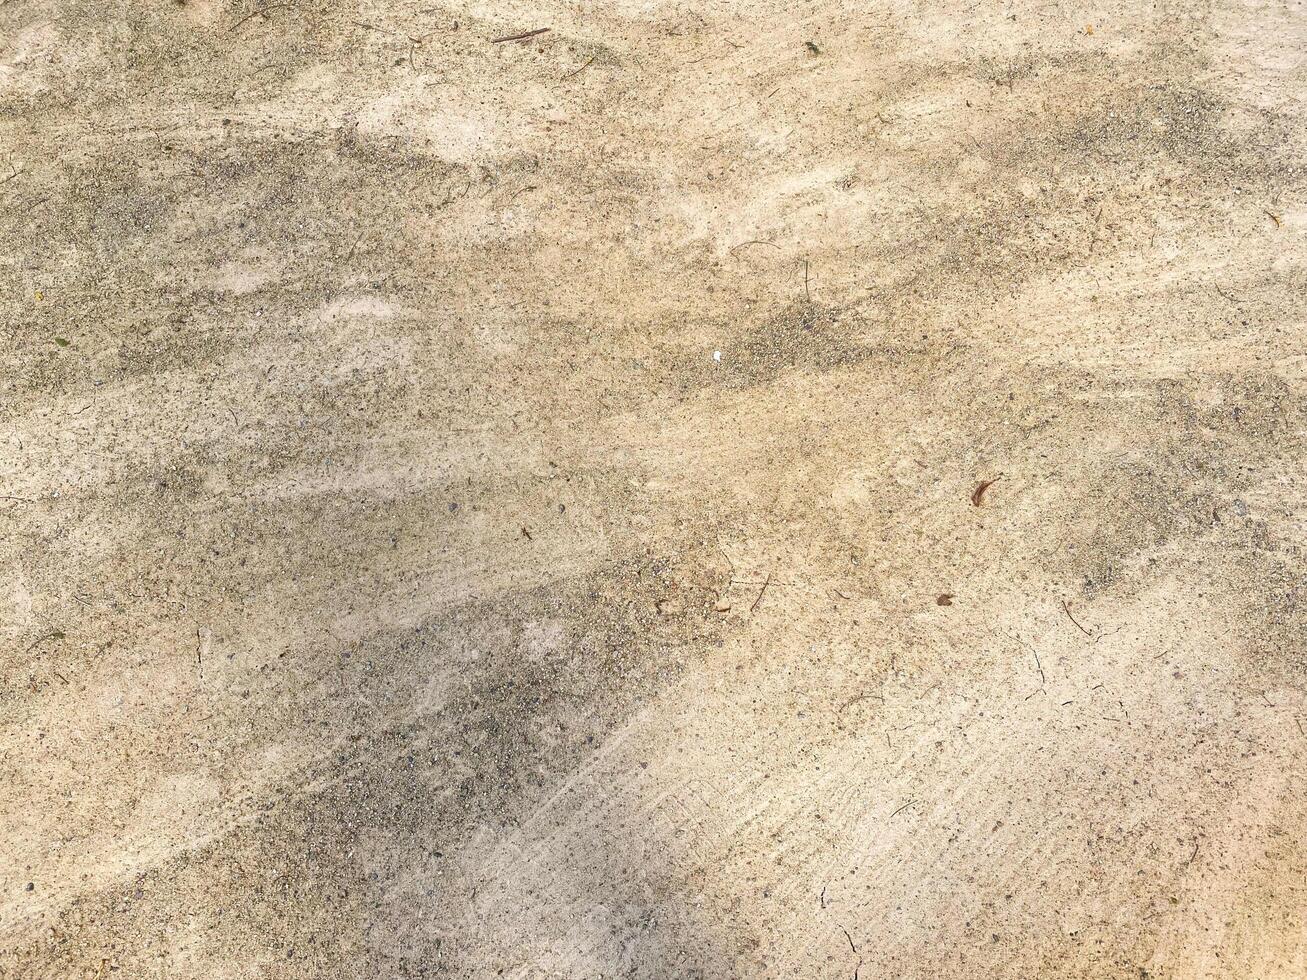 uma concreto textura fundo exibindo a cru beleza do cimento e pedra. foto